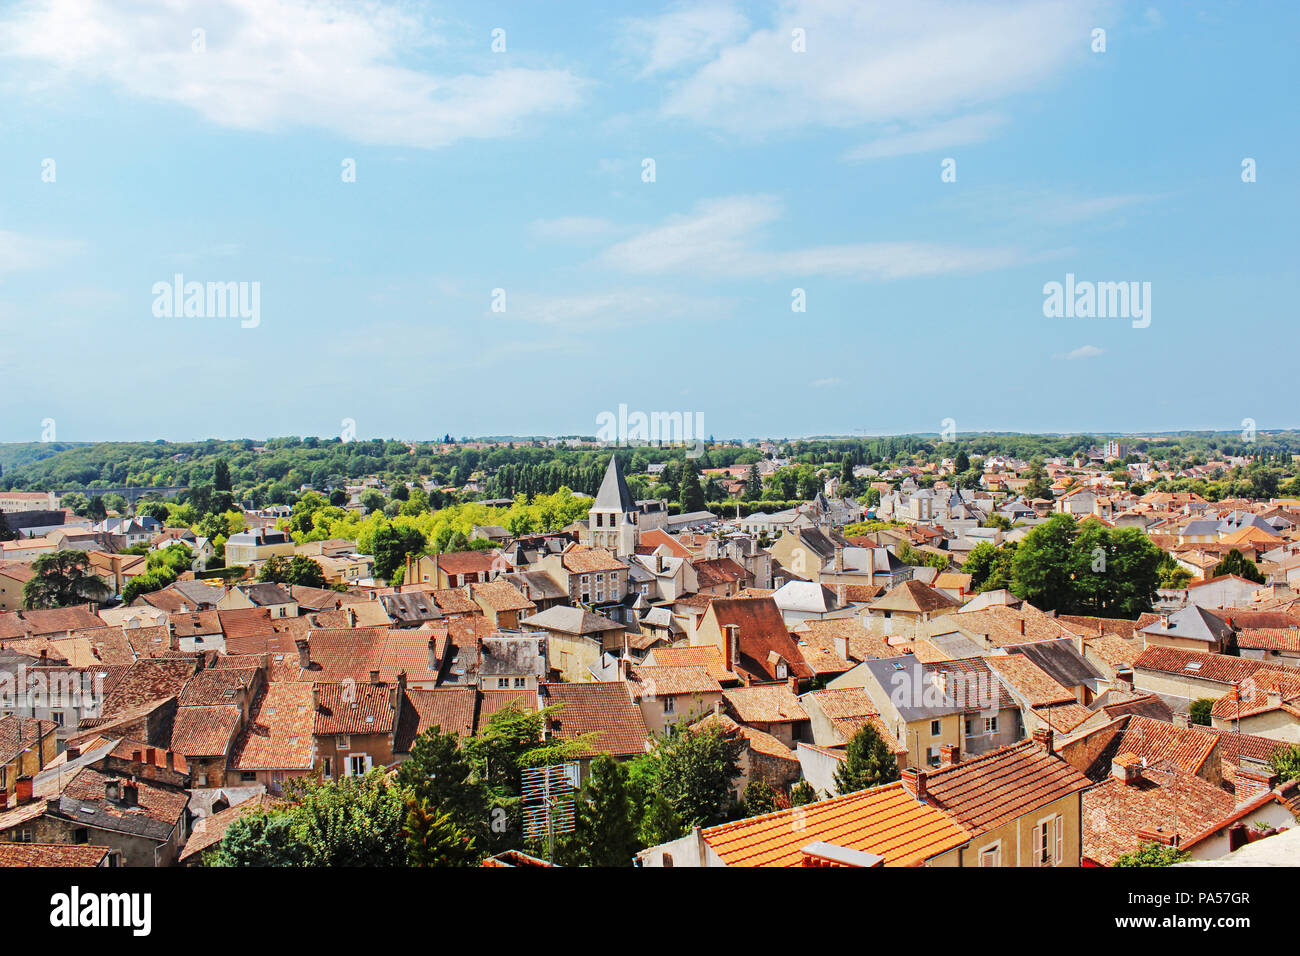 Anzeigen von Chauvigny, Frankreich von oben auf dem Hügel Stockfoto